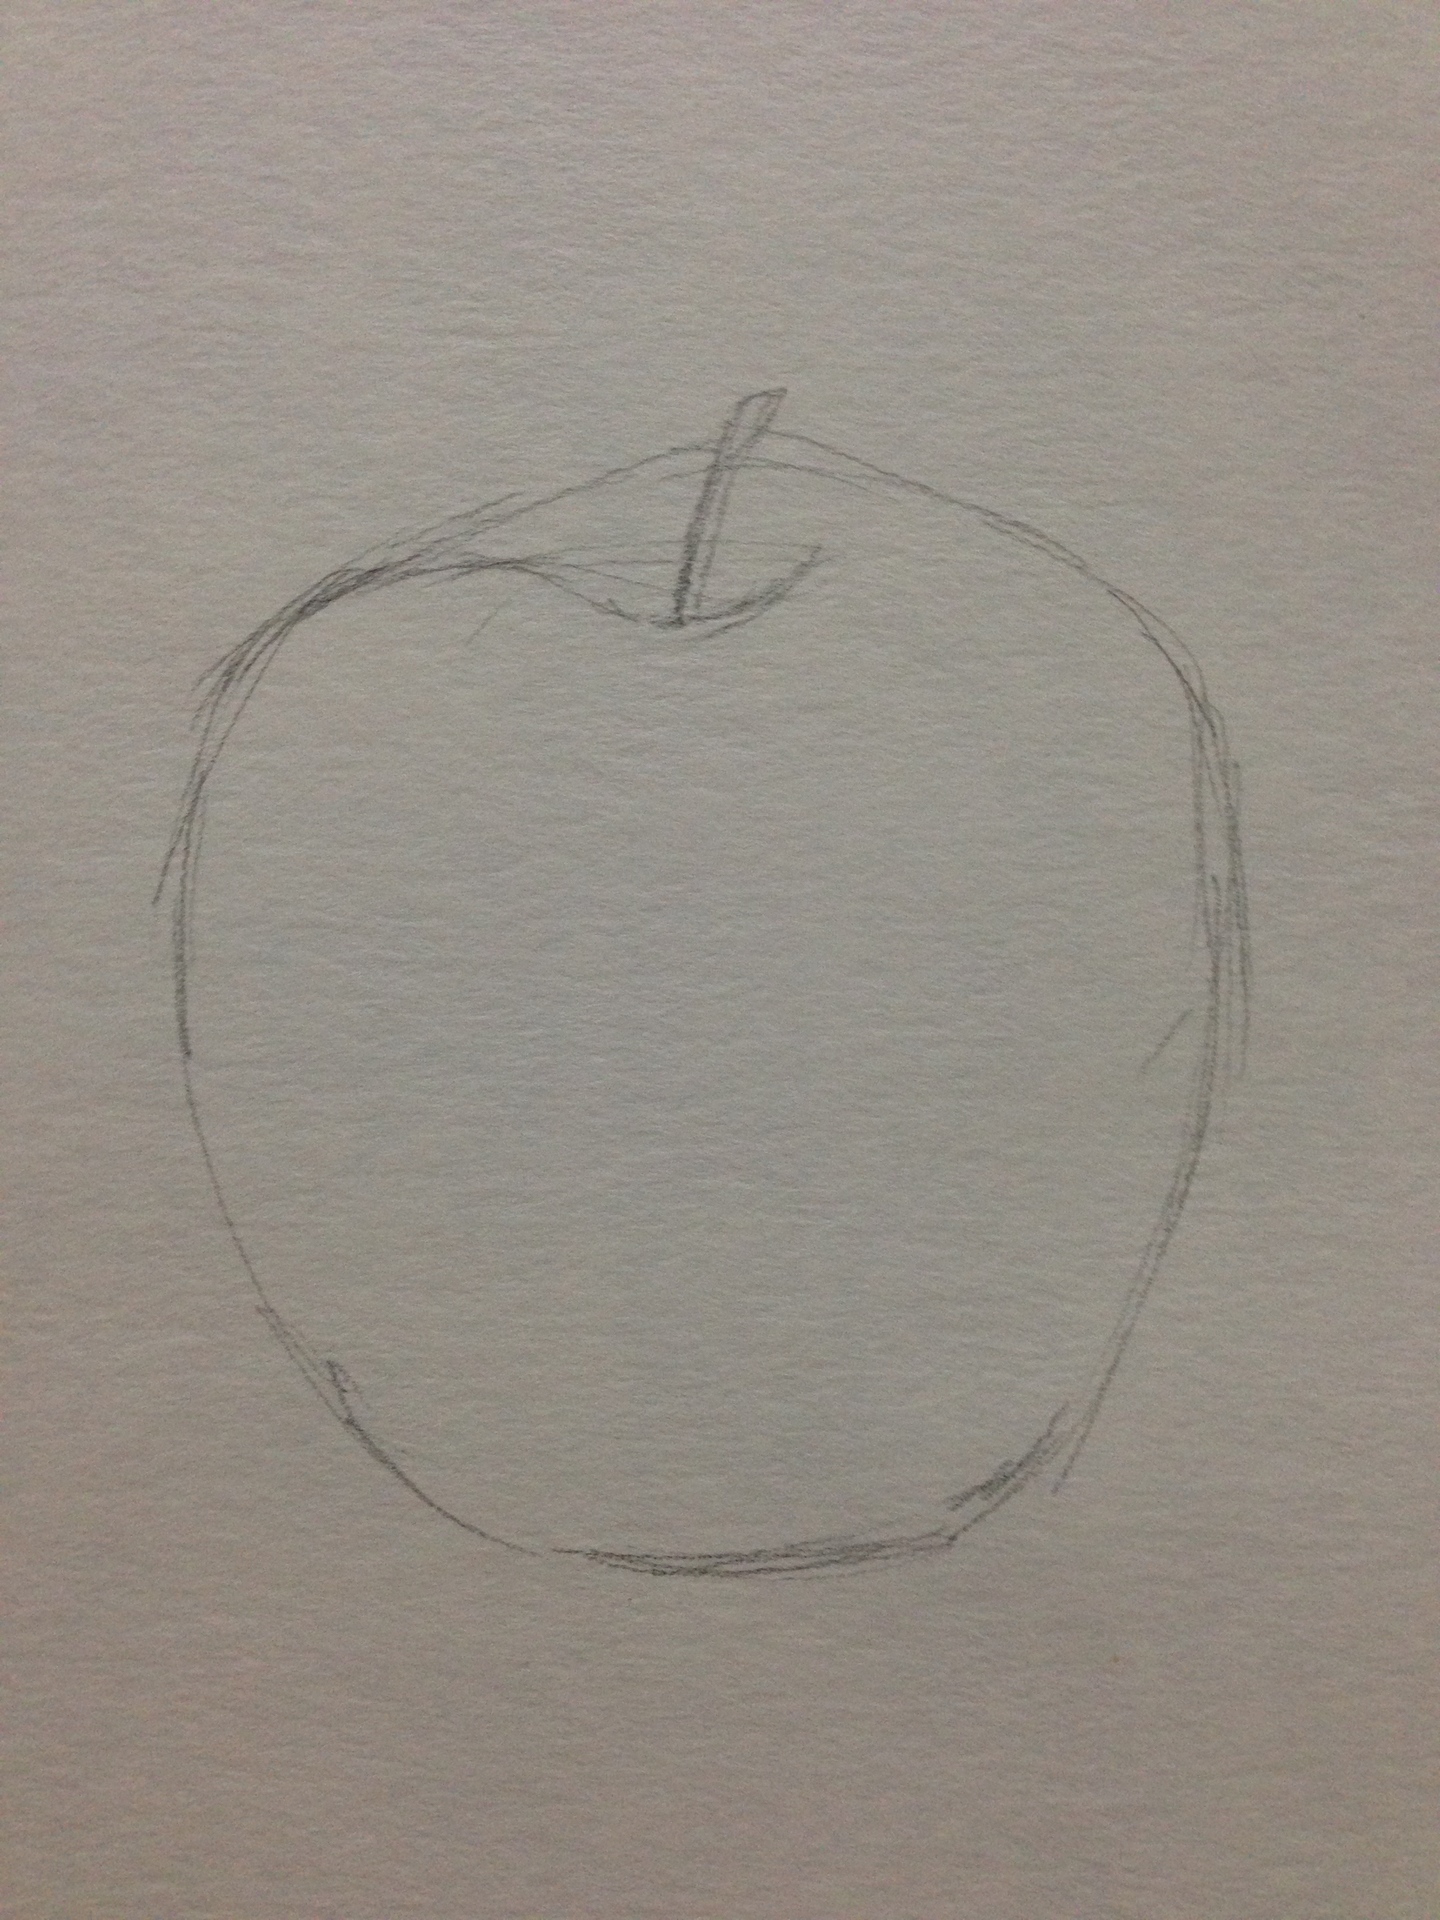 りんごデッサン 描き始め編 S S絵画教室